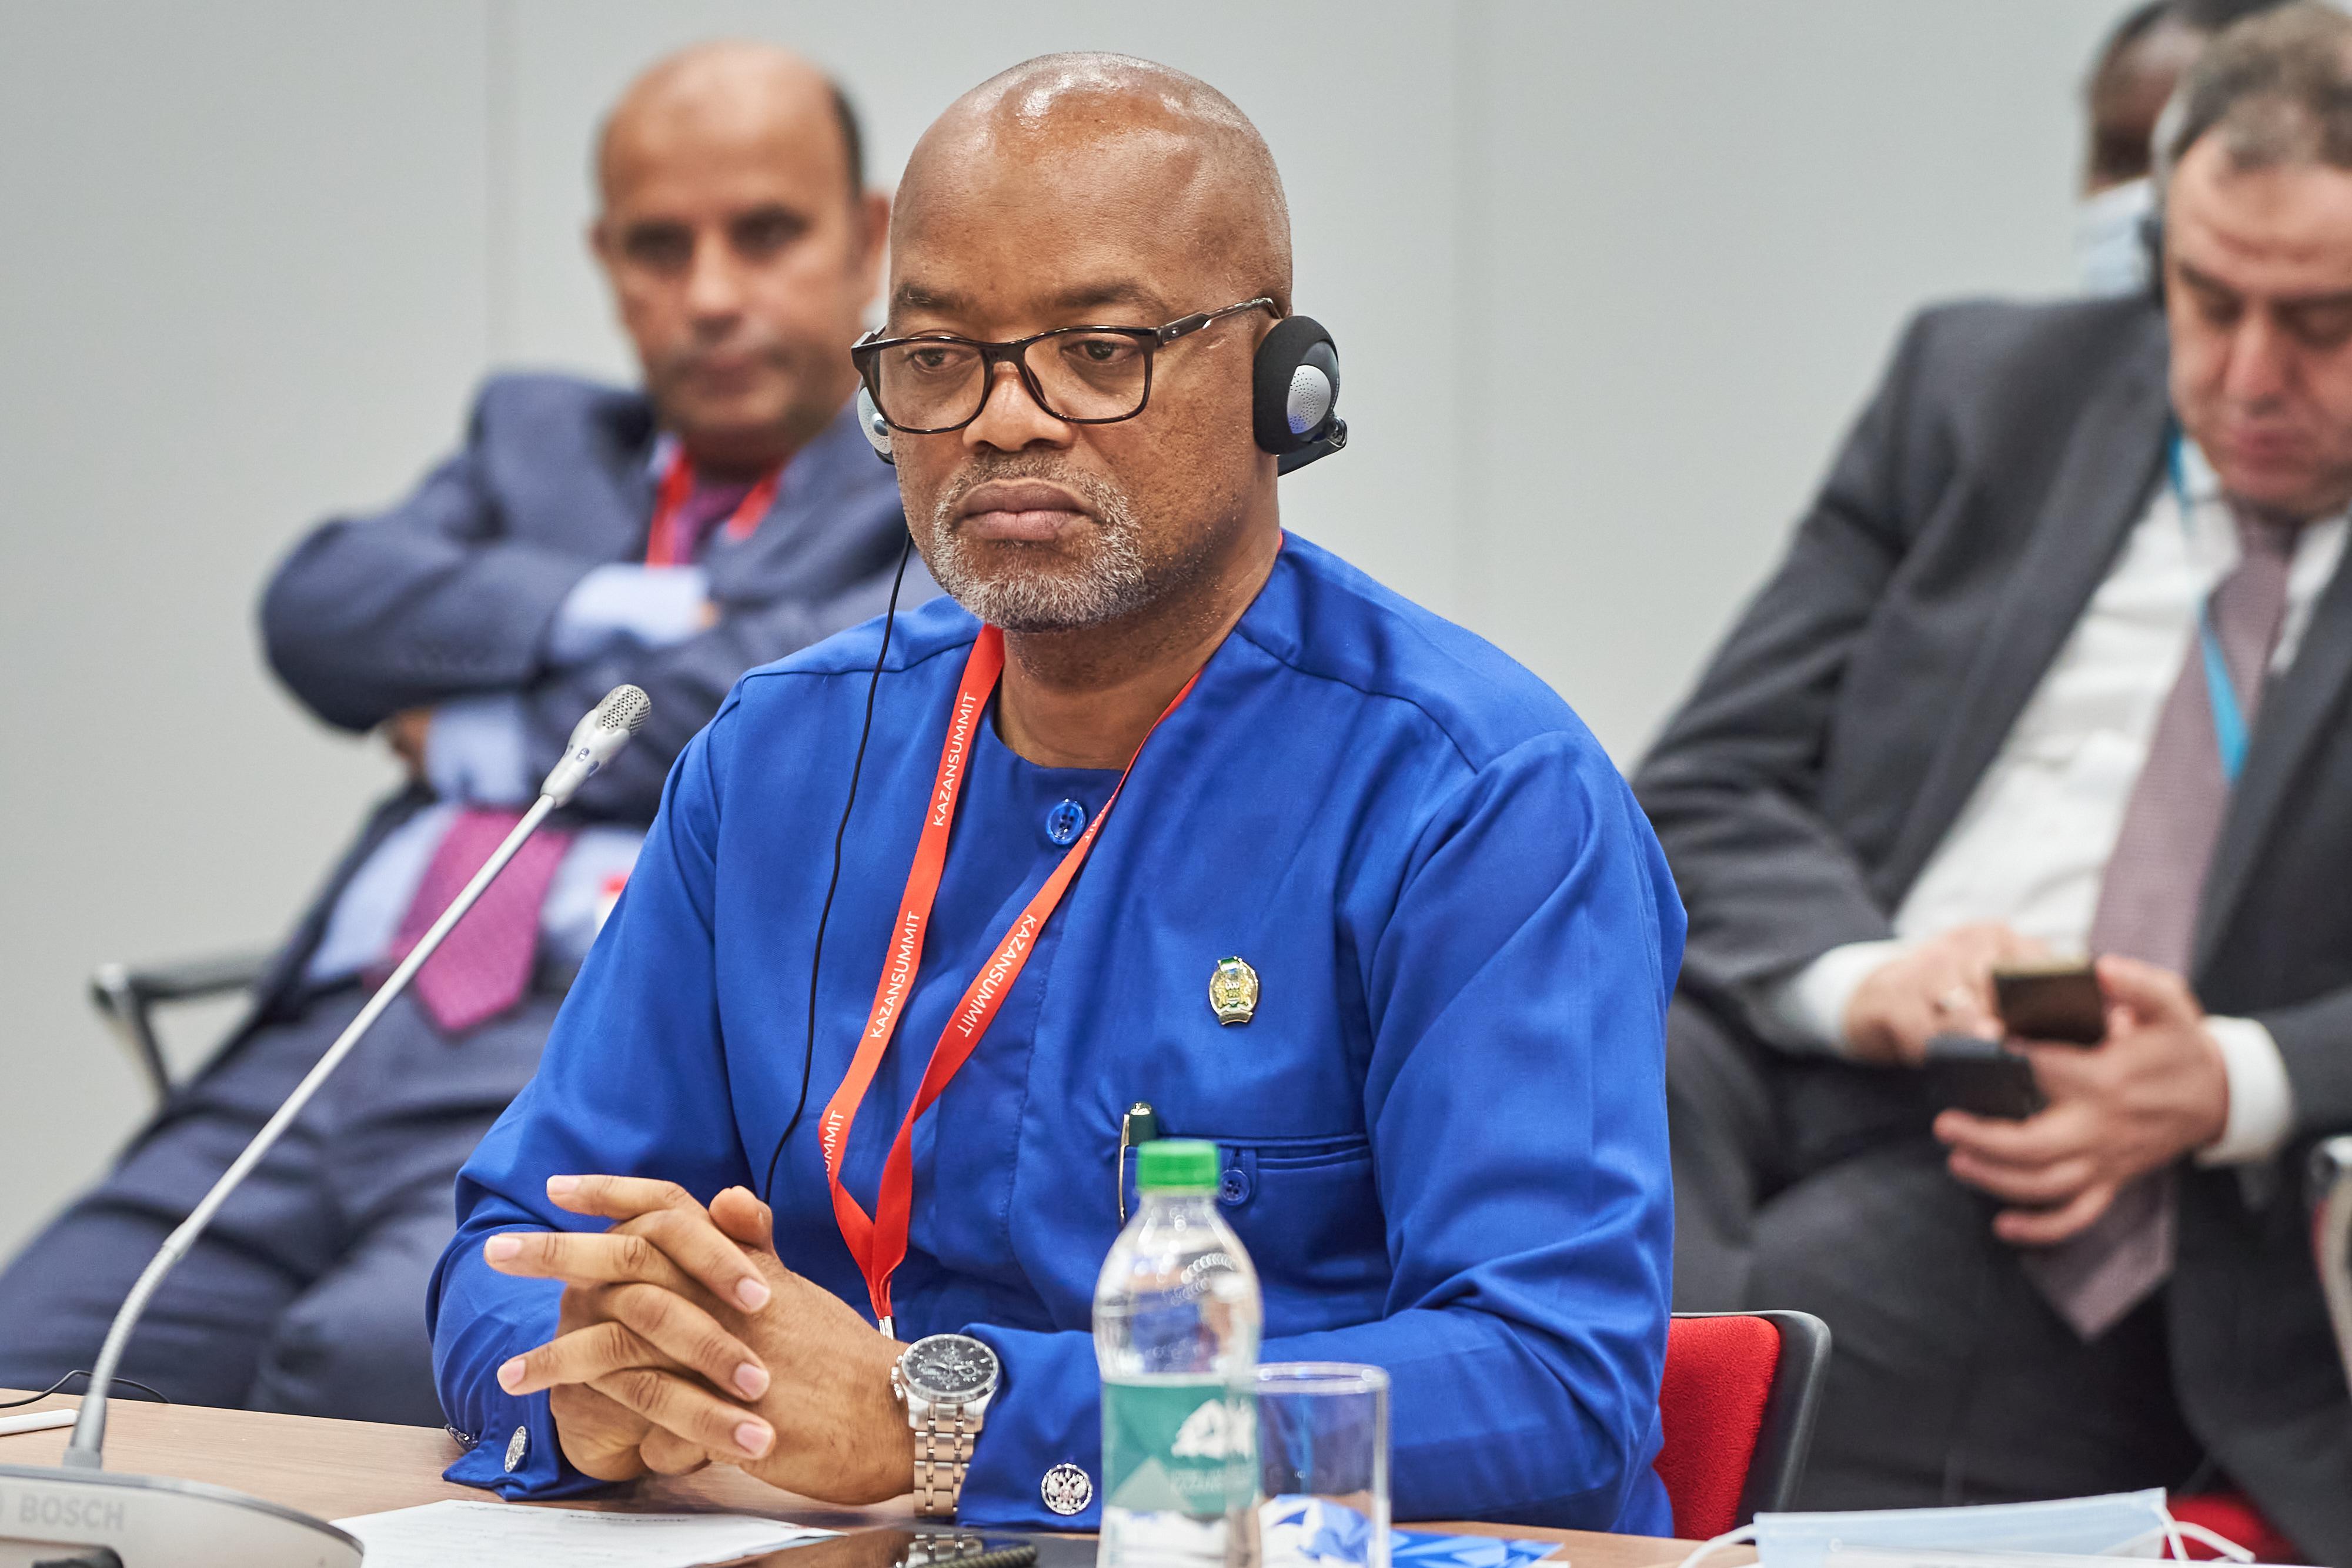 Чрезвычайный и Полномочный Посол Республики Сьерра-Леоне в Российской Федерации
Мохамед Йонгаво